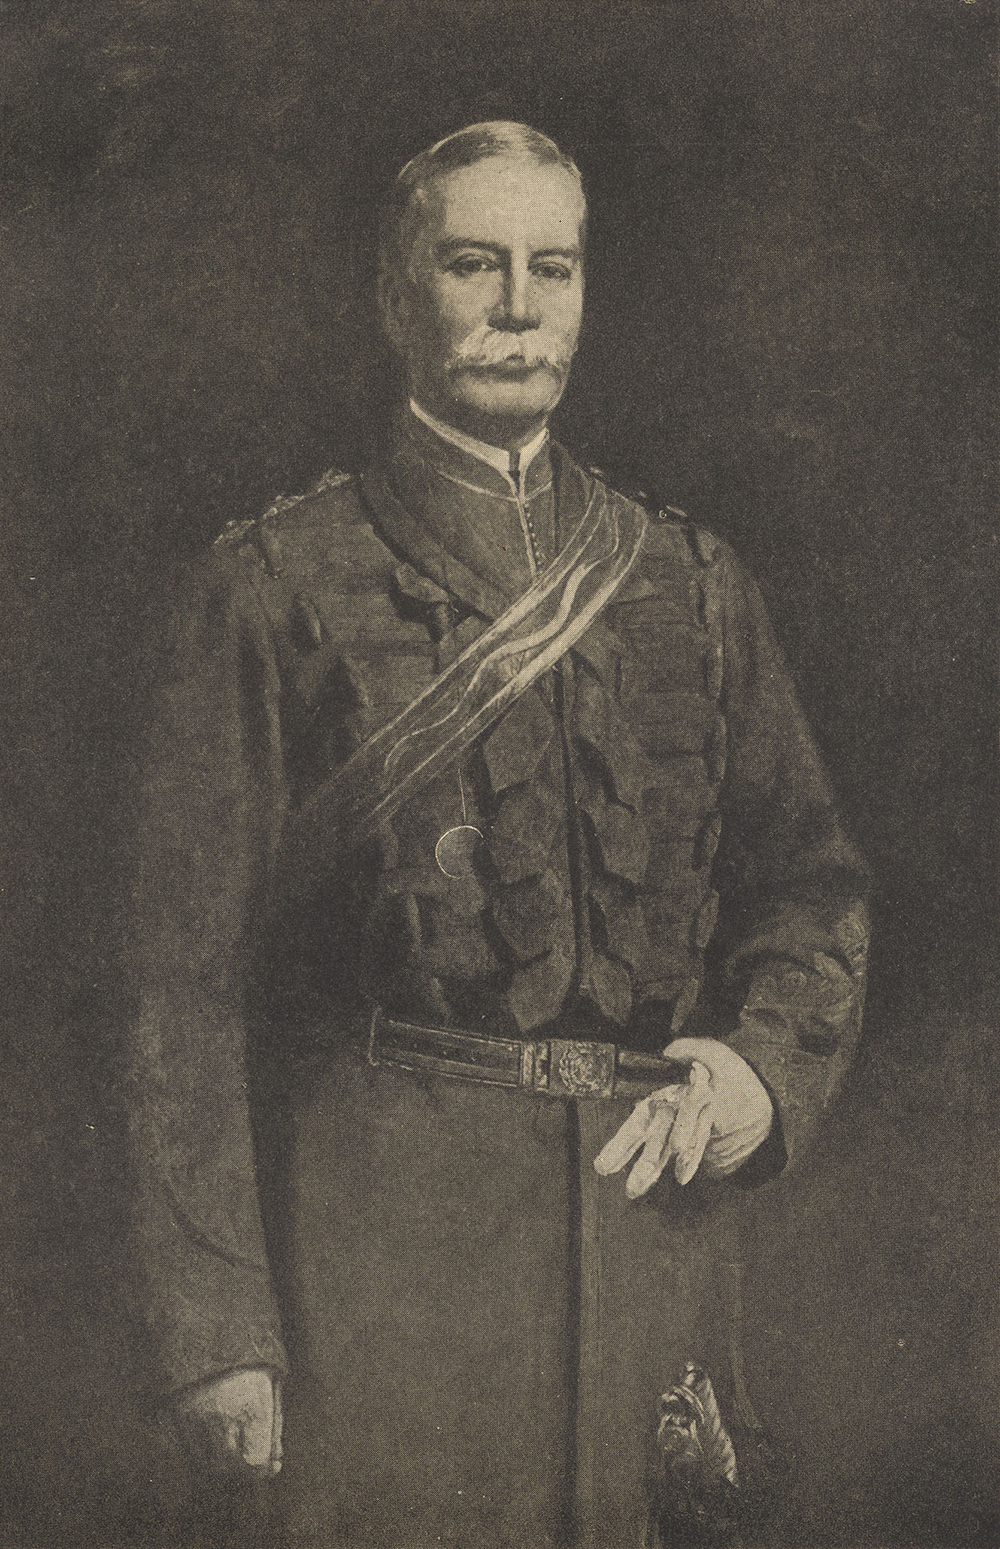 Portrait du capitaine James Marshall Grant en tenue militaire officielle. Grant porte une écharpe en travers du corps, de l’épaule gauche à la hanche droite. Il porte un gant de couleur pâle à la main gauche, de laquelle il tient sa ceinture et son autre gant. Il a le bras droit le long du corps, poing fermé.